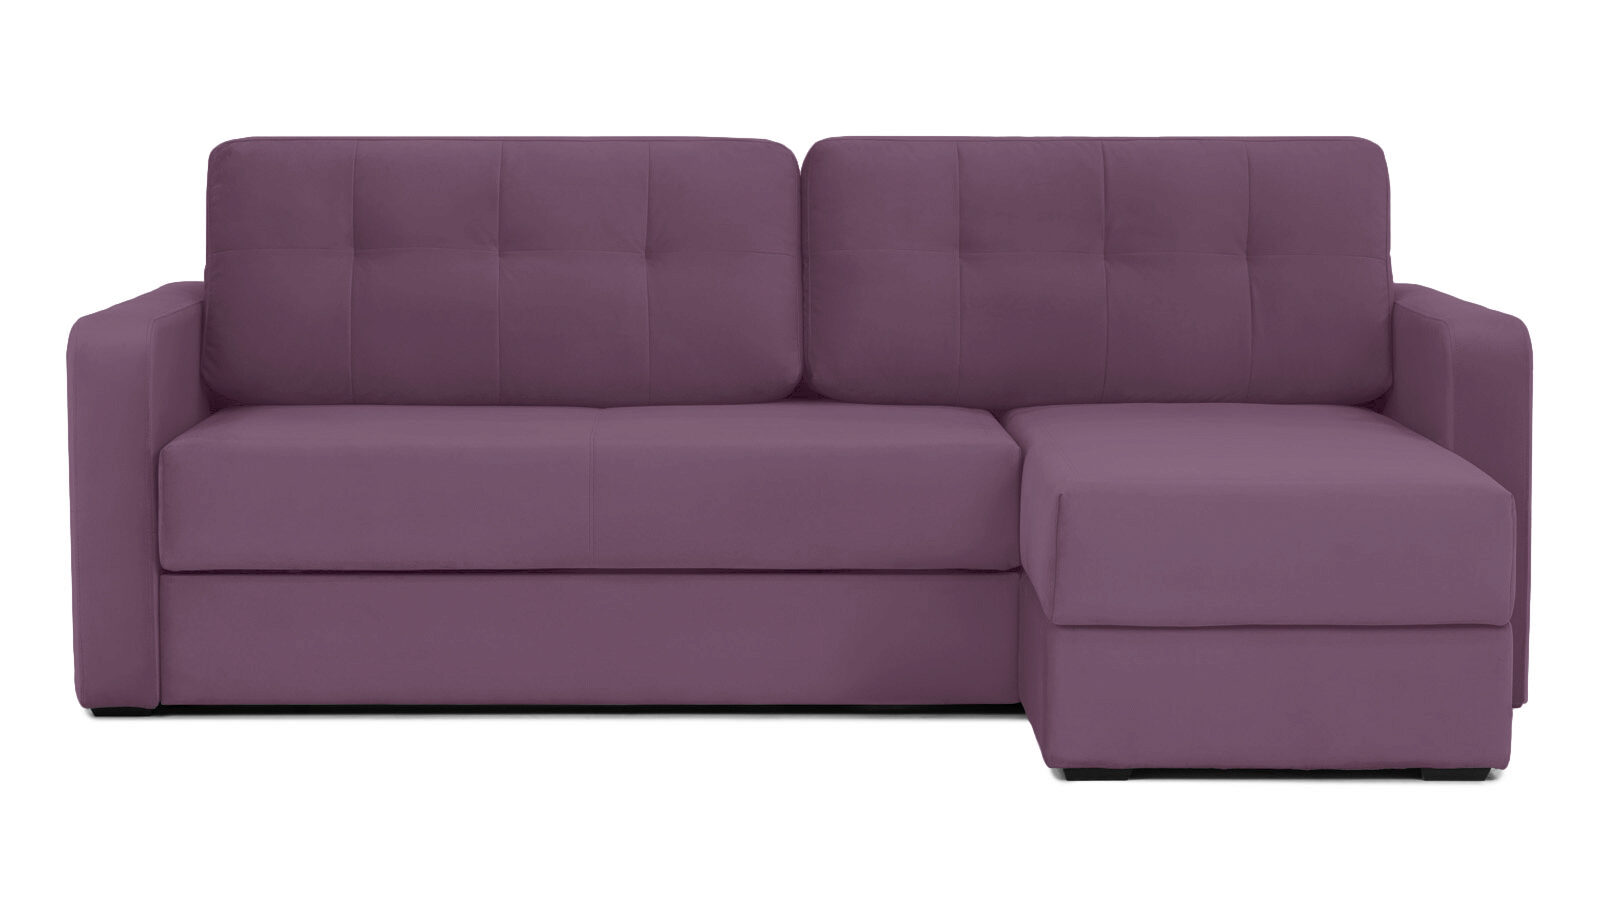 Угловой диван Loko Pro с широкими подлокотниками, с матрасом средней жесткости Askona